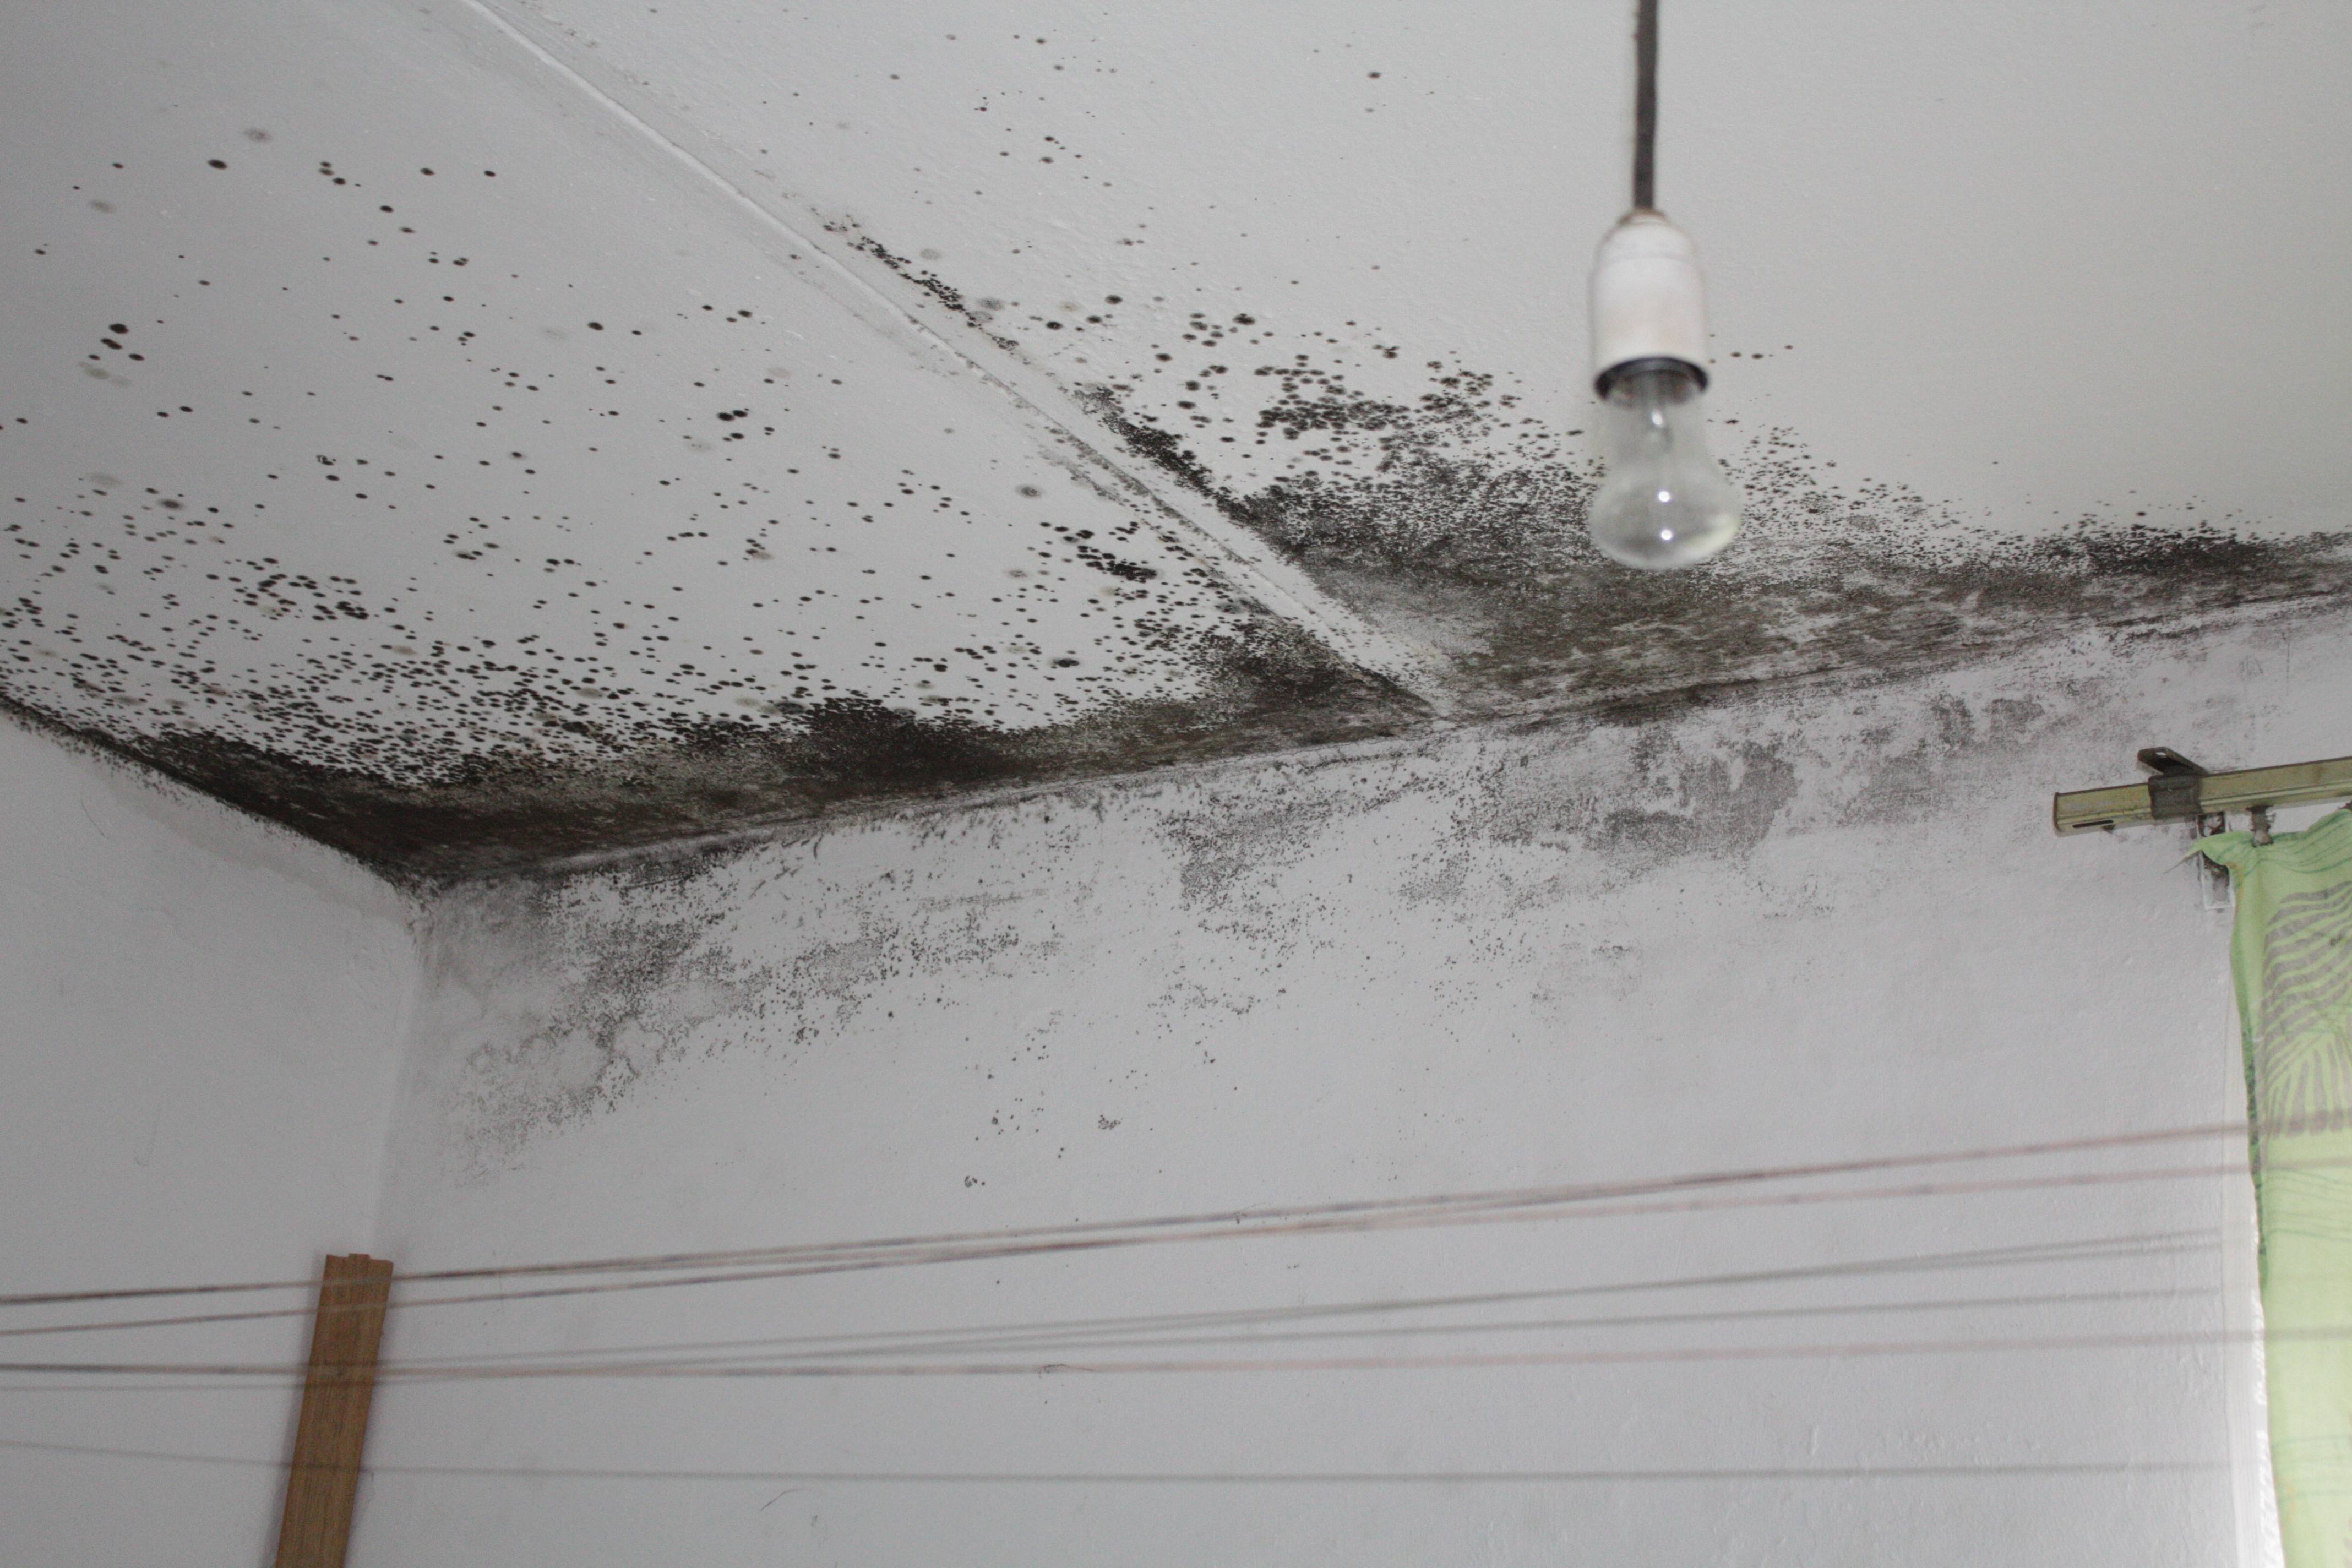 Плесень в ванной на потолке: грибок, черные пятна, как избавиться, народные средства, виды, опасности